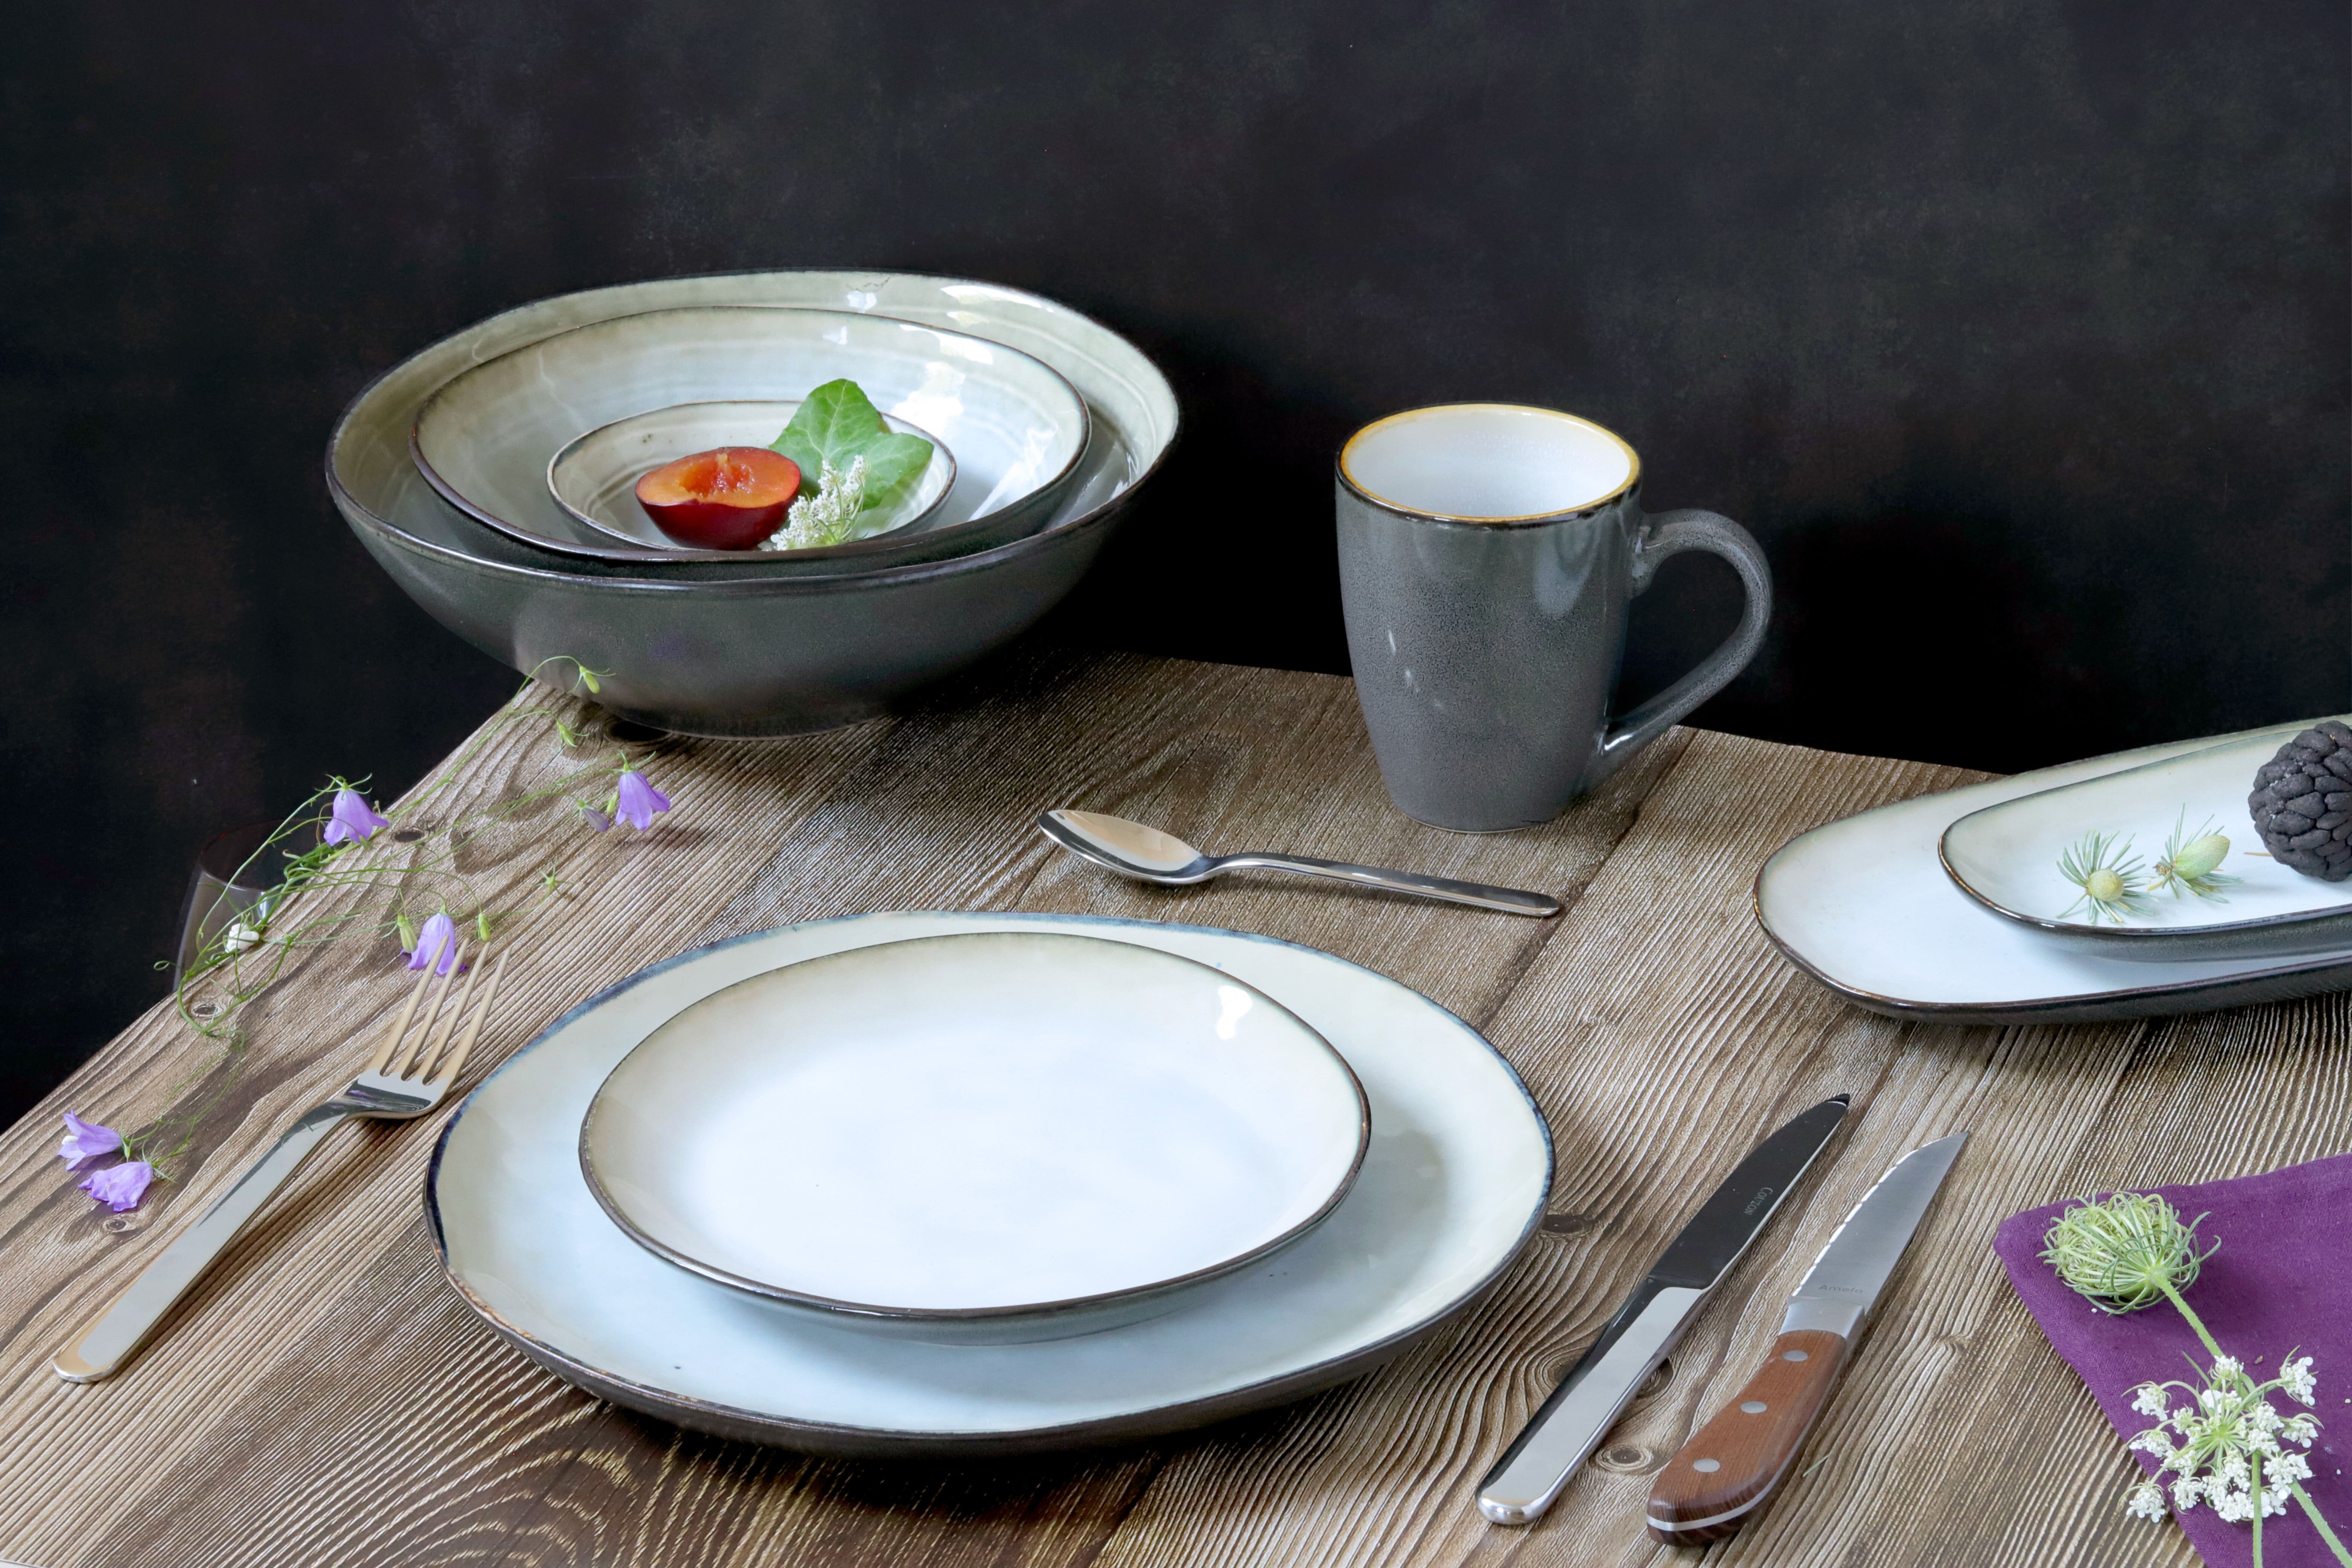 Un set d'assiettes, plats et bols en porcelaine de la marque Amefa.